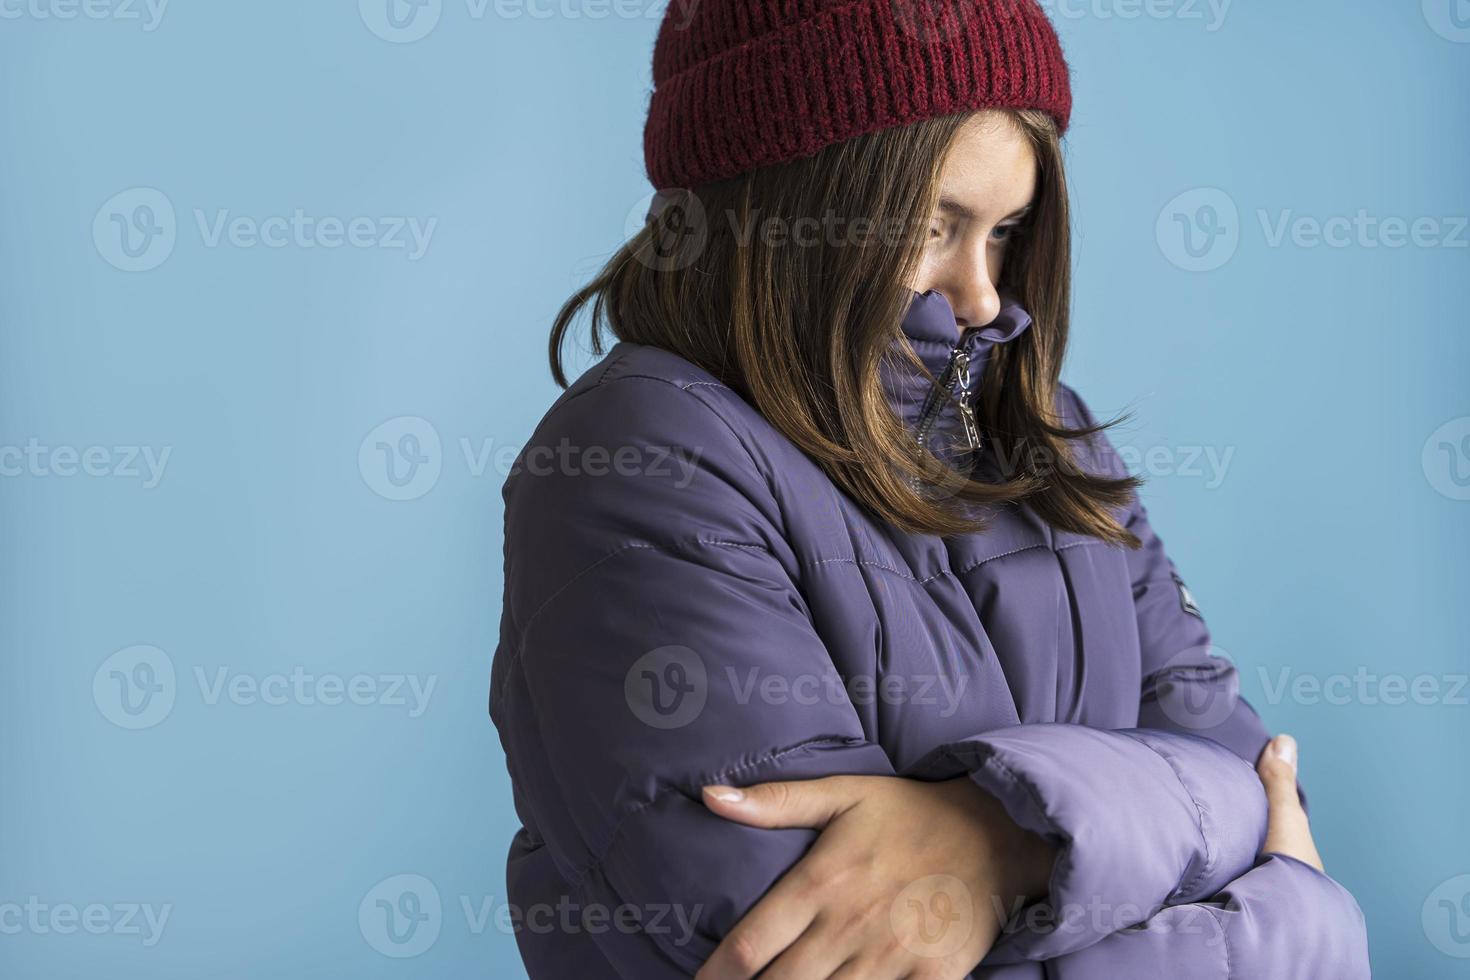 una chica hermosa con un sombrero de punto y una chaqueta cálida sobre un fondo azul, la chica está congelada, una belleza congelada foto